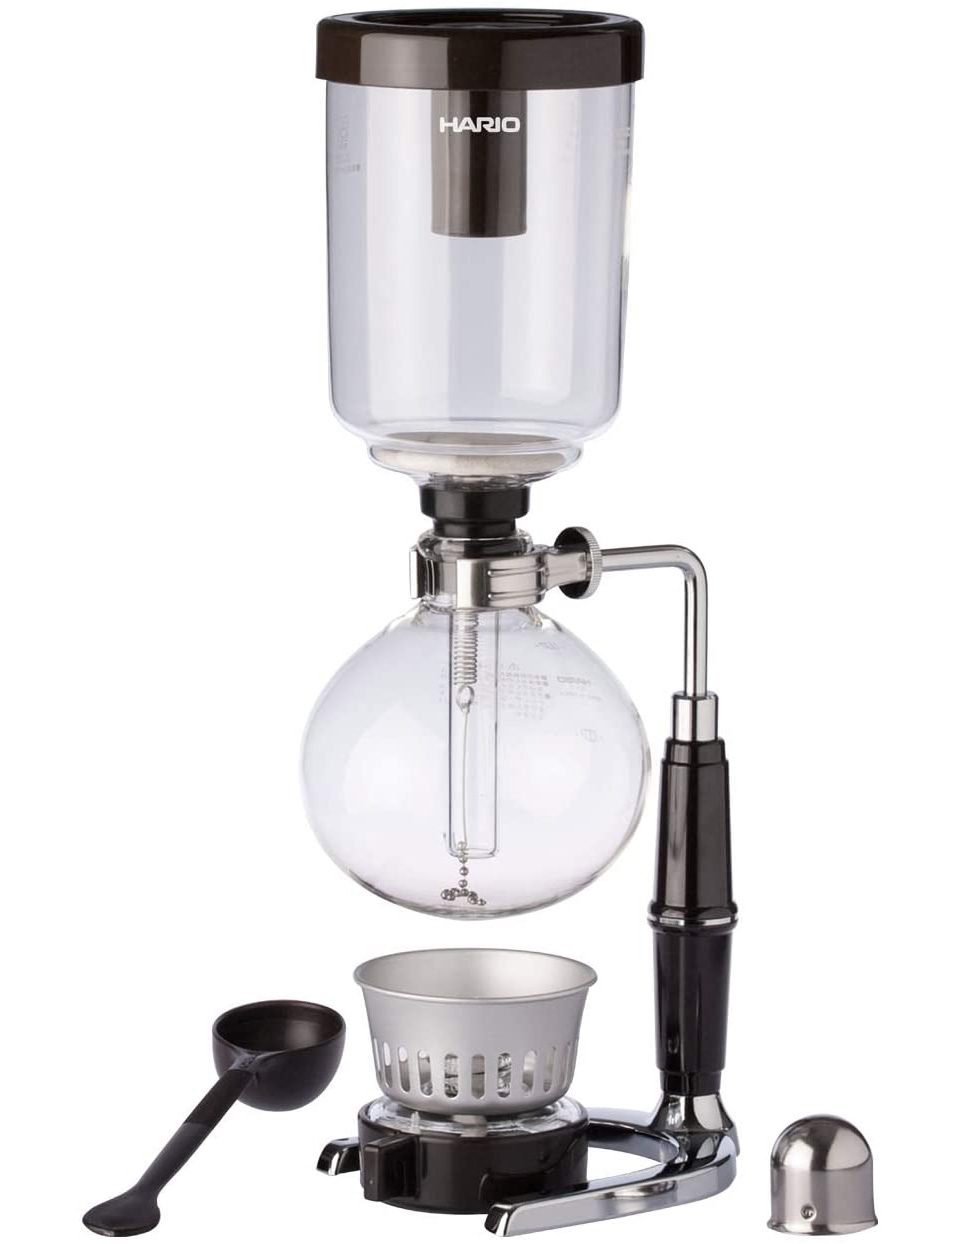 Hario Technica Glass Syphon Coffee Maker